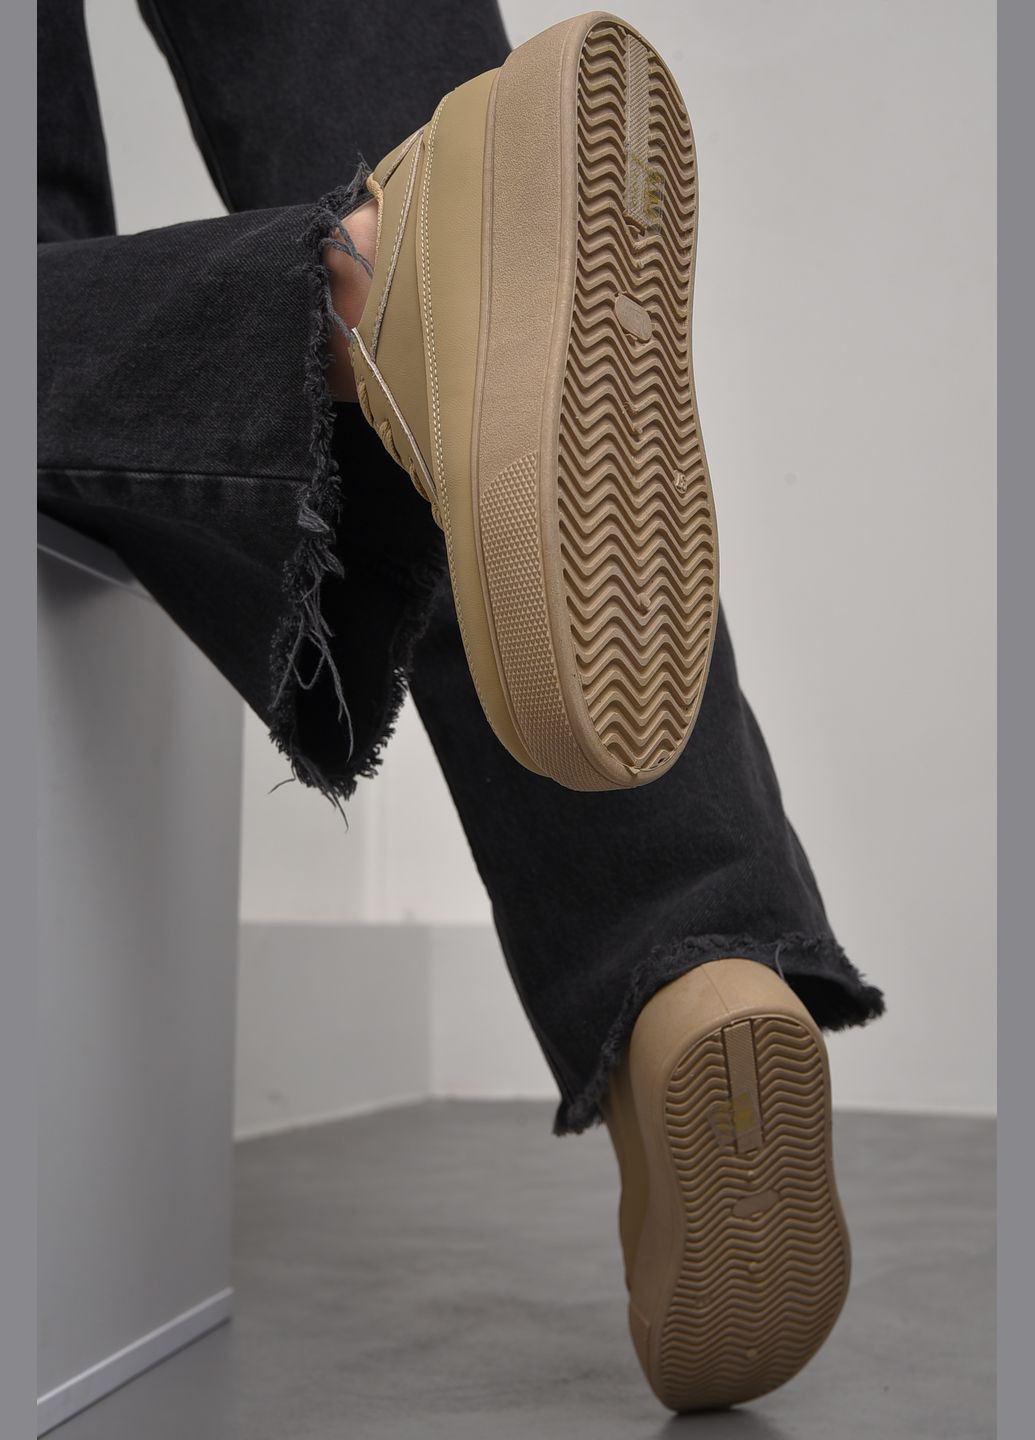 Темно-бежевые демисезонные кроссовки женские натуральная кожа темно-бежевого цвета на шнуровке Let's Shop